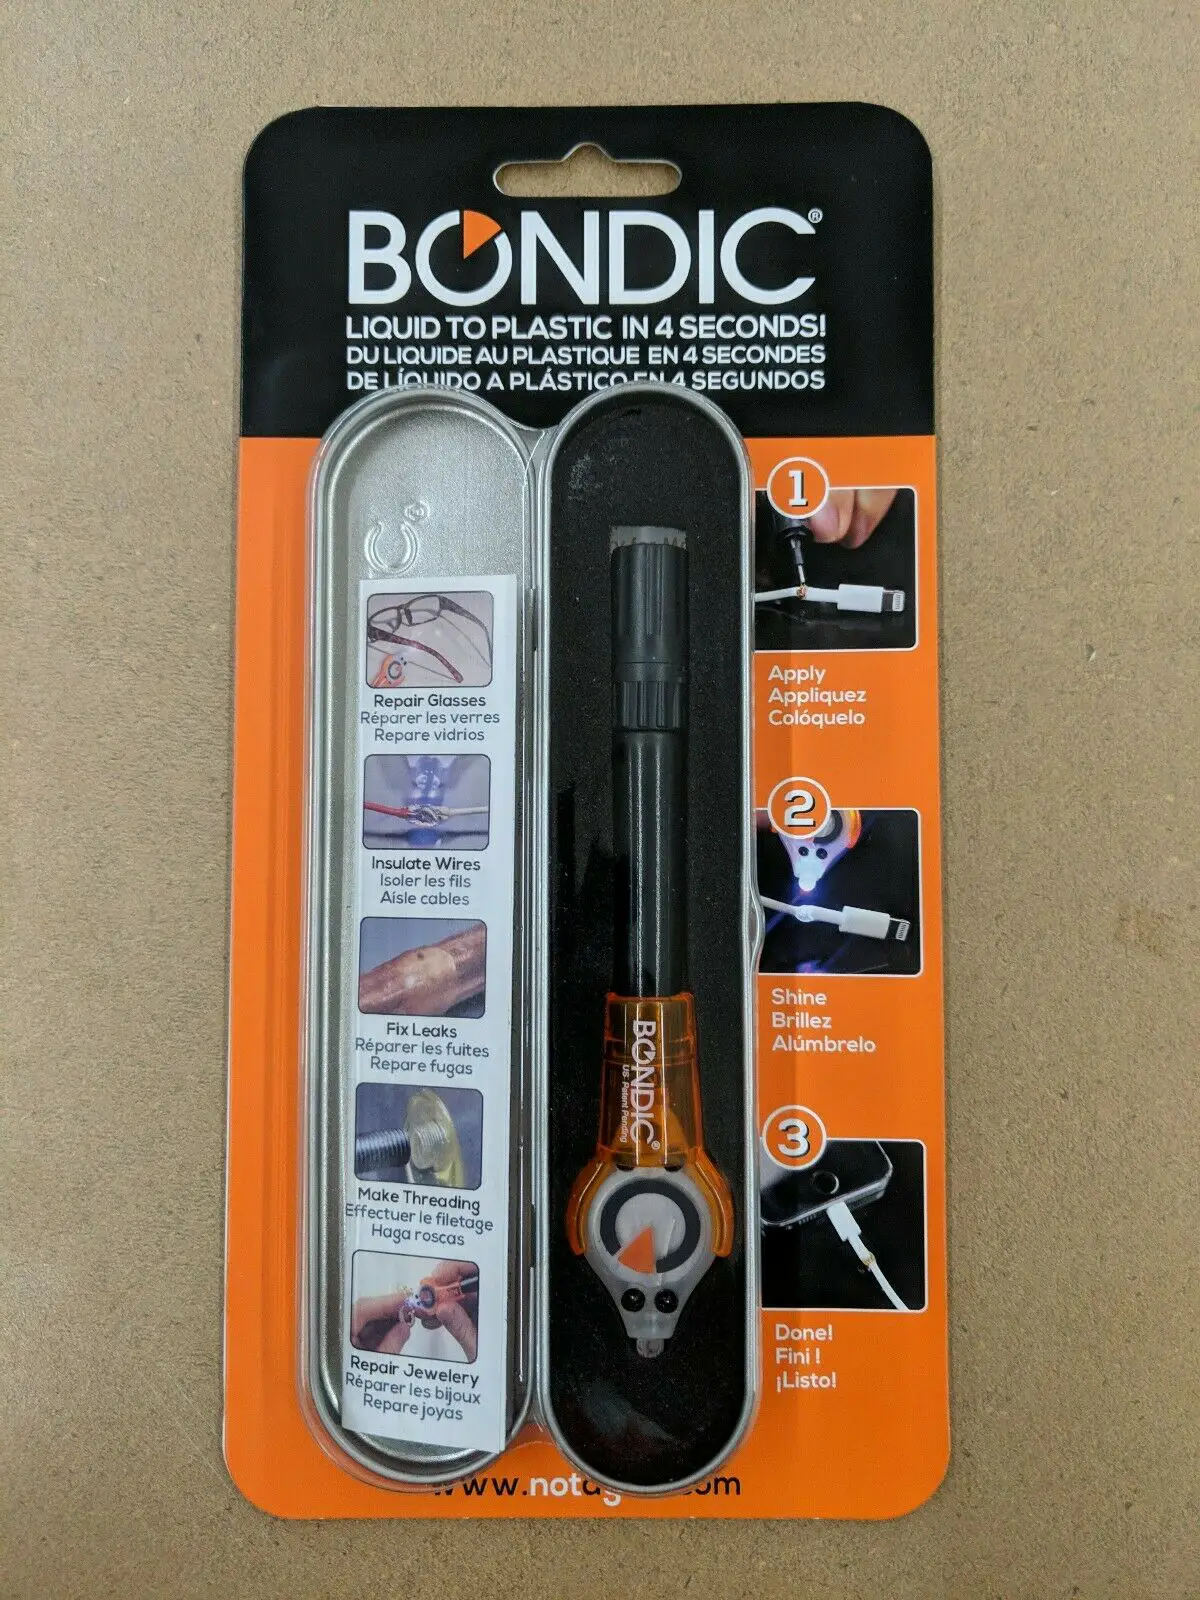 Where Can I Buy Bondic Glue